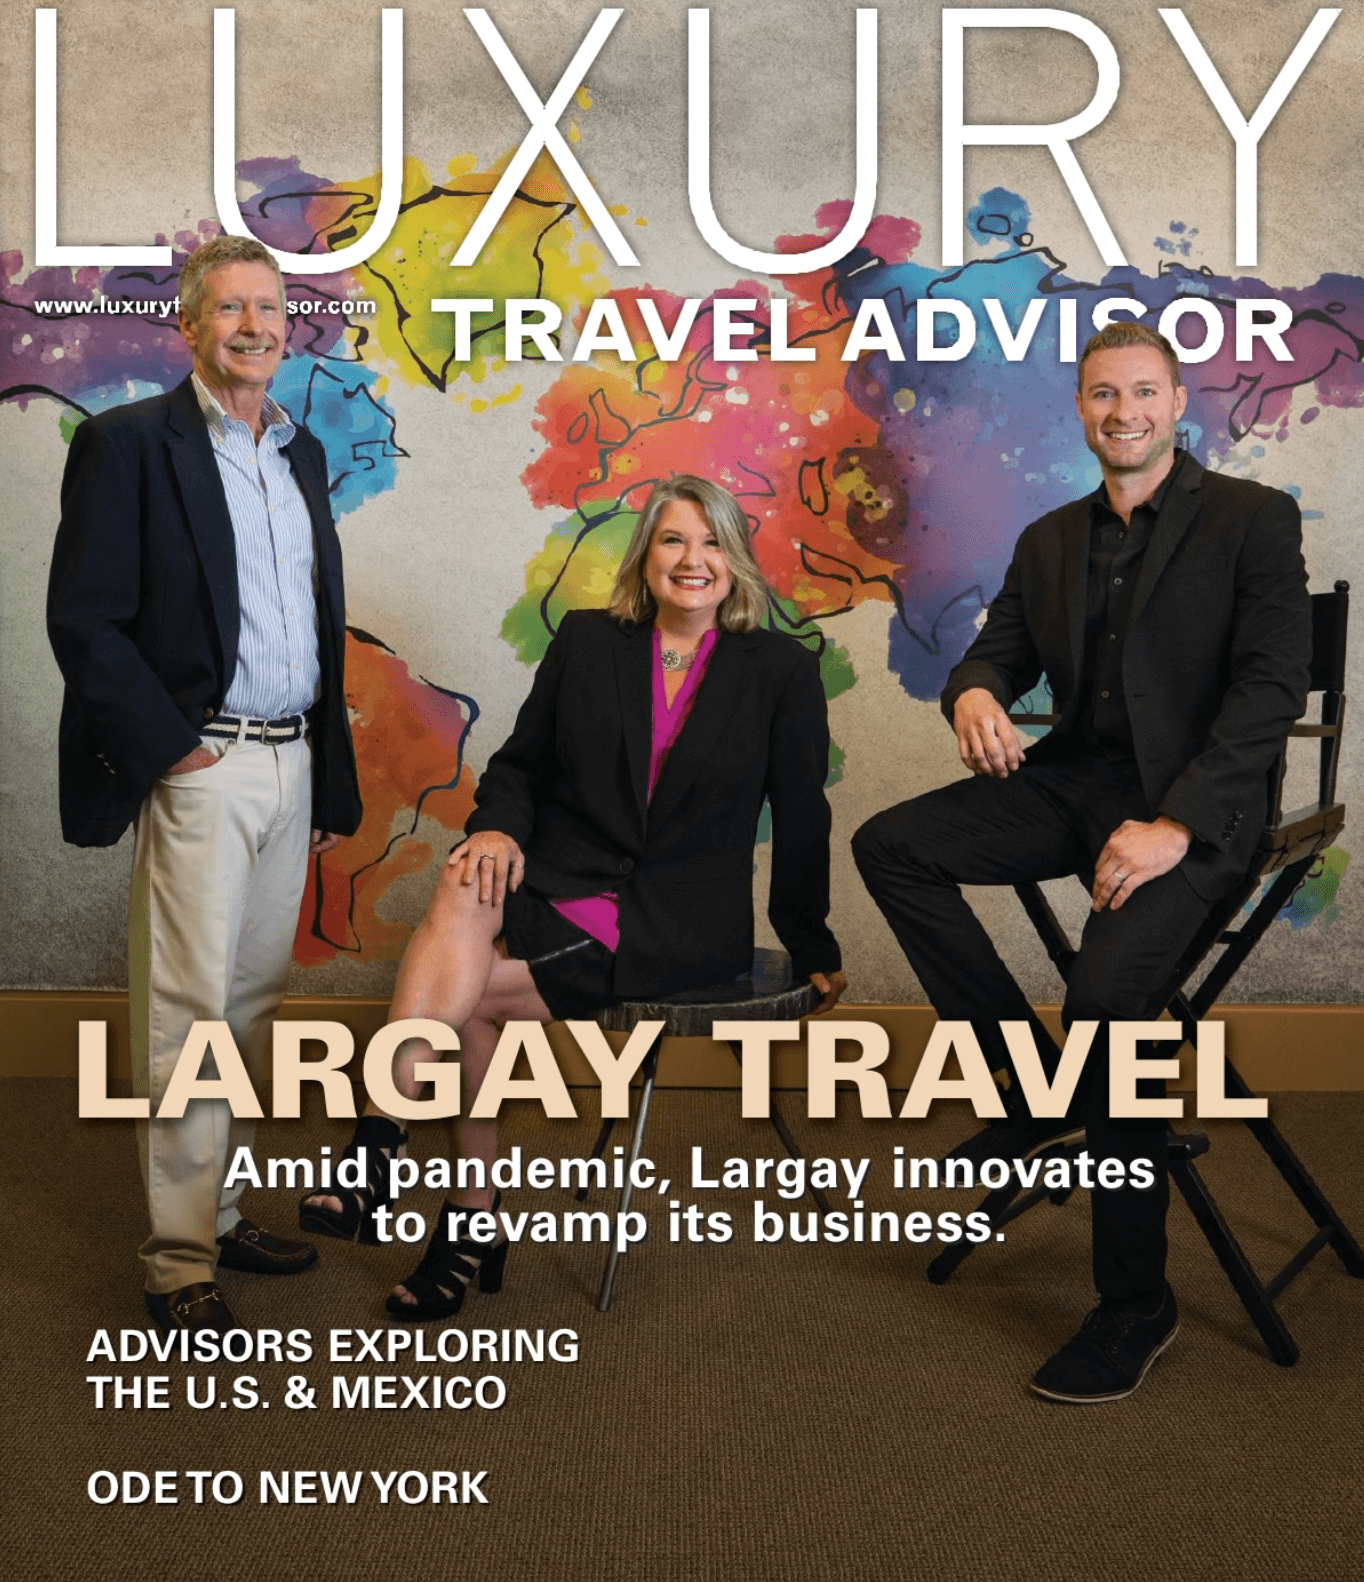 luxury travel advisor reddit